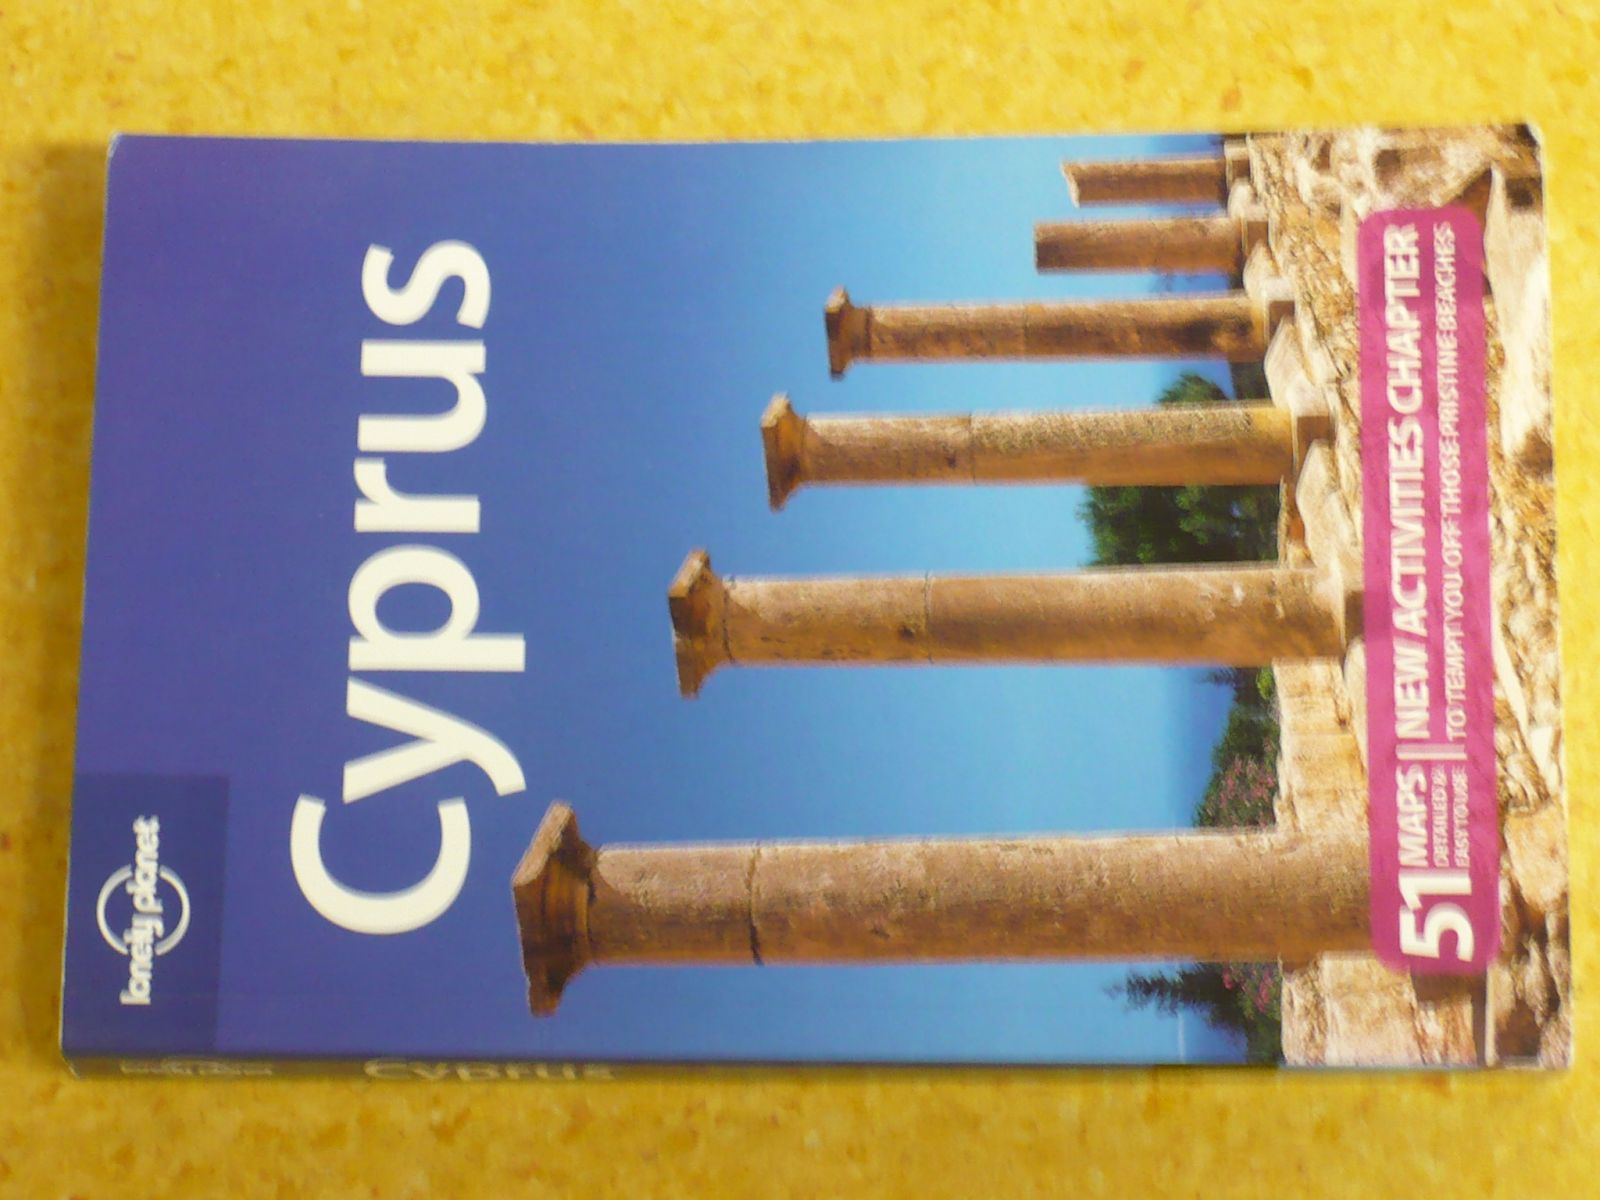 Cyprus (2009) anglicky